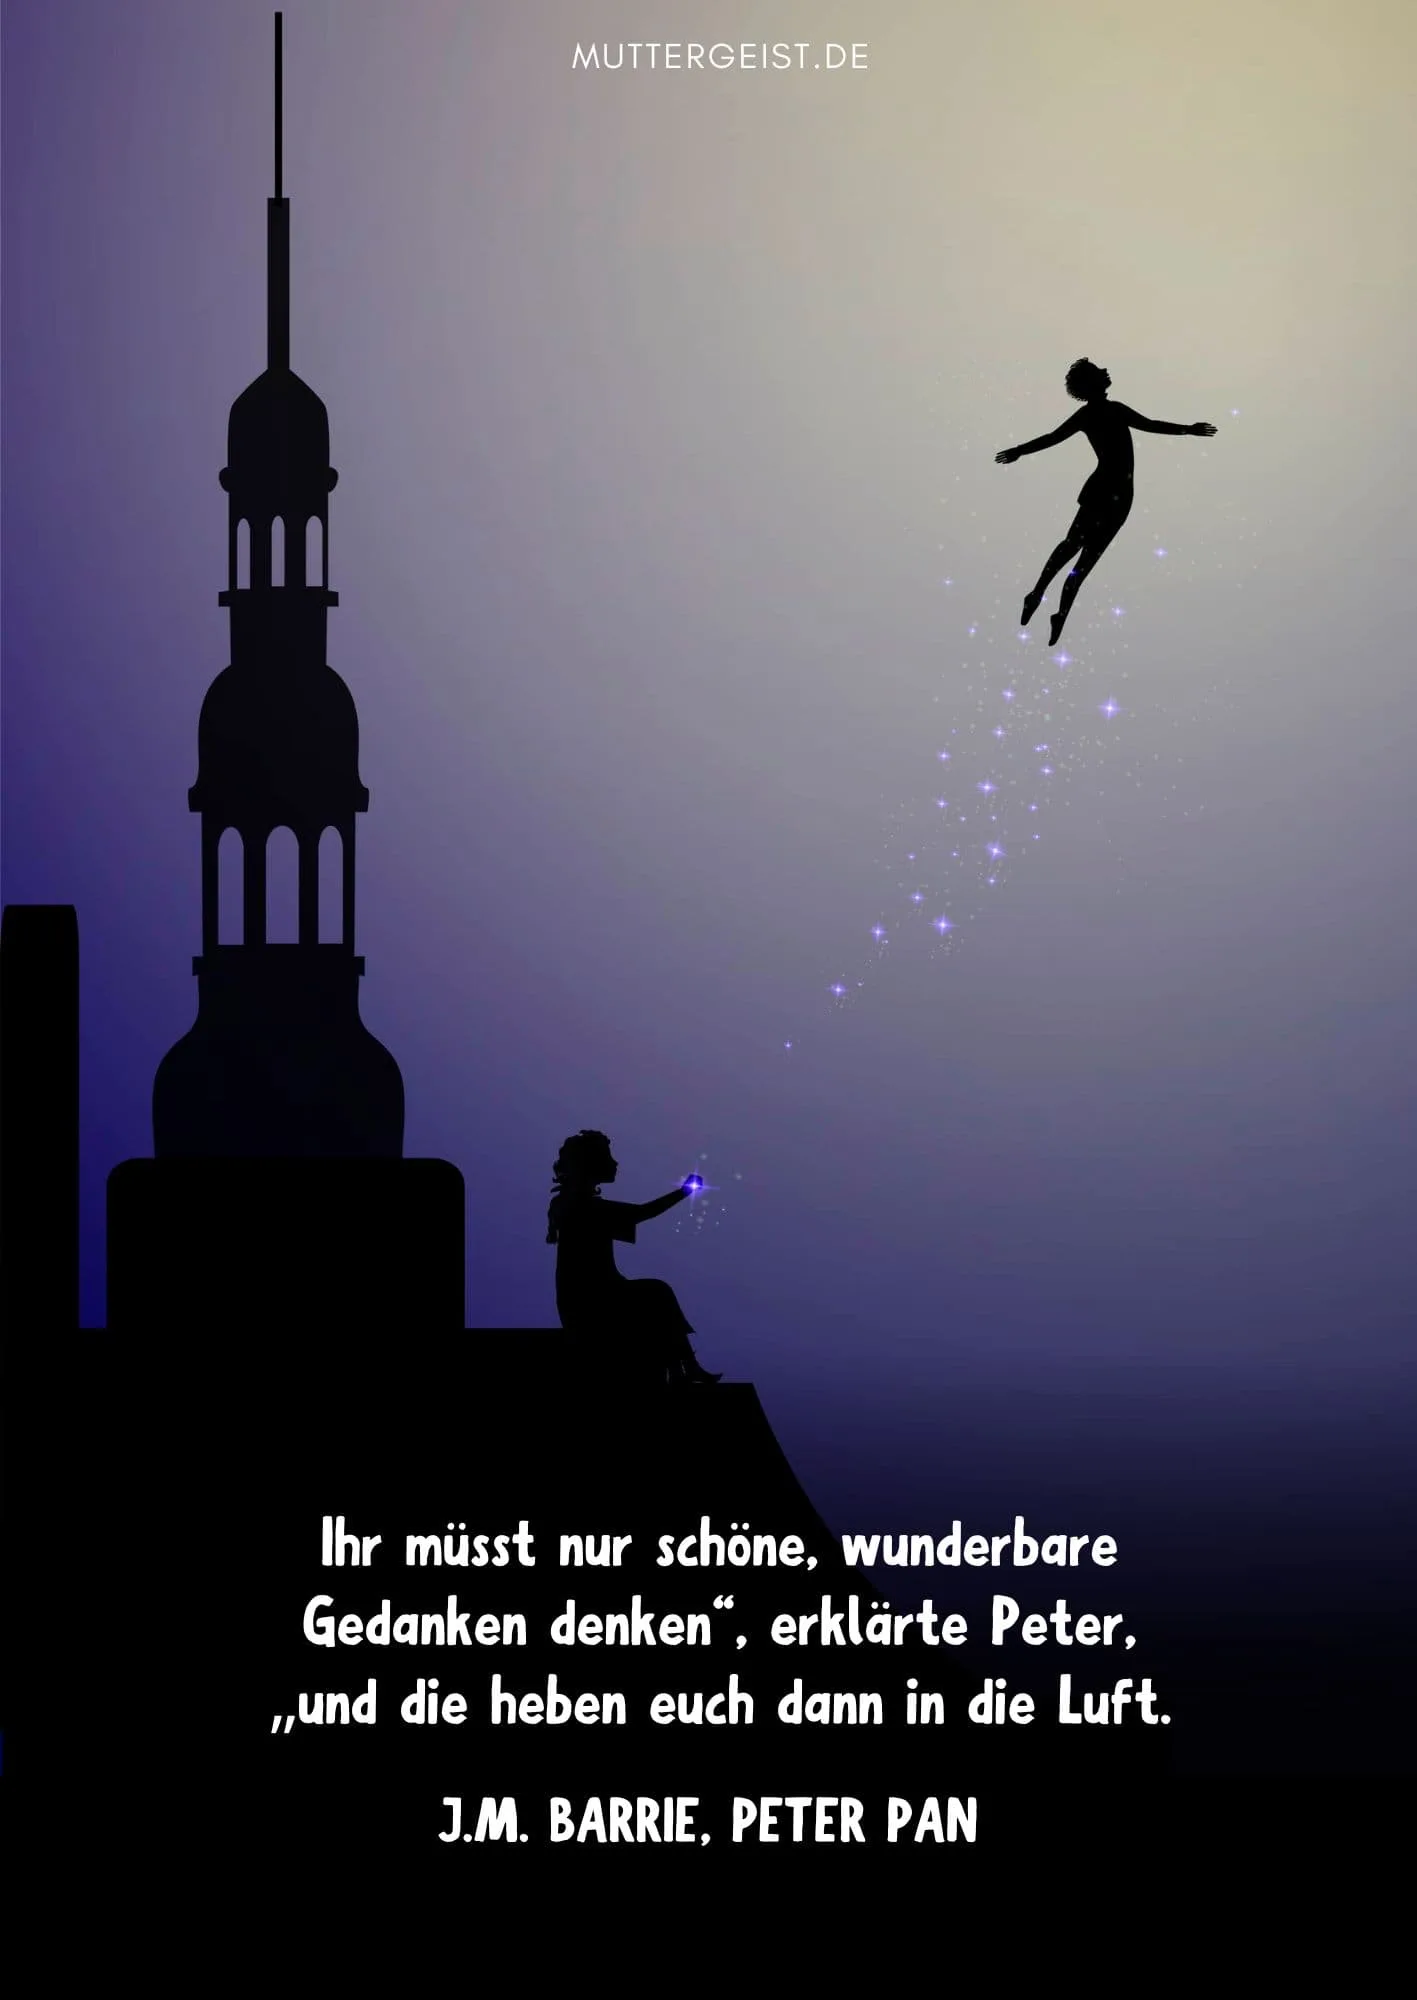 Peter Pans Zitat über schöne Gedanken